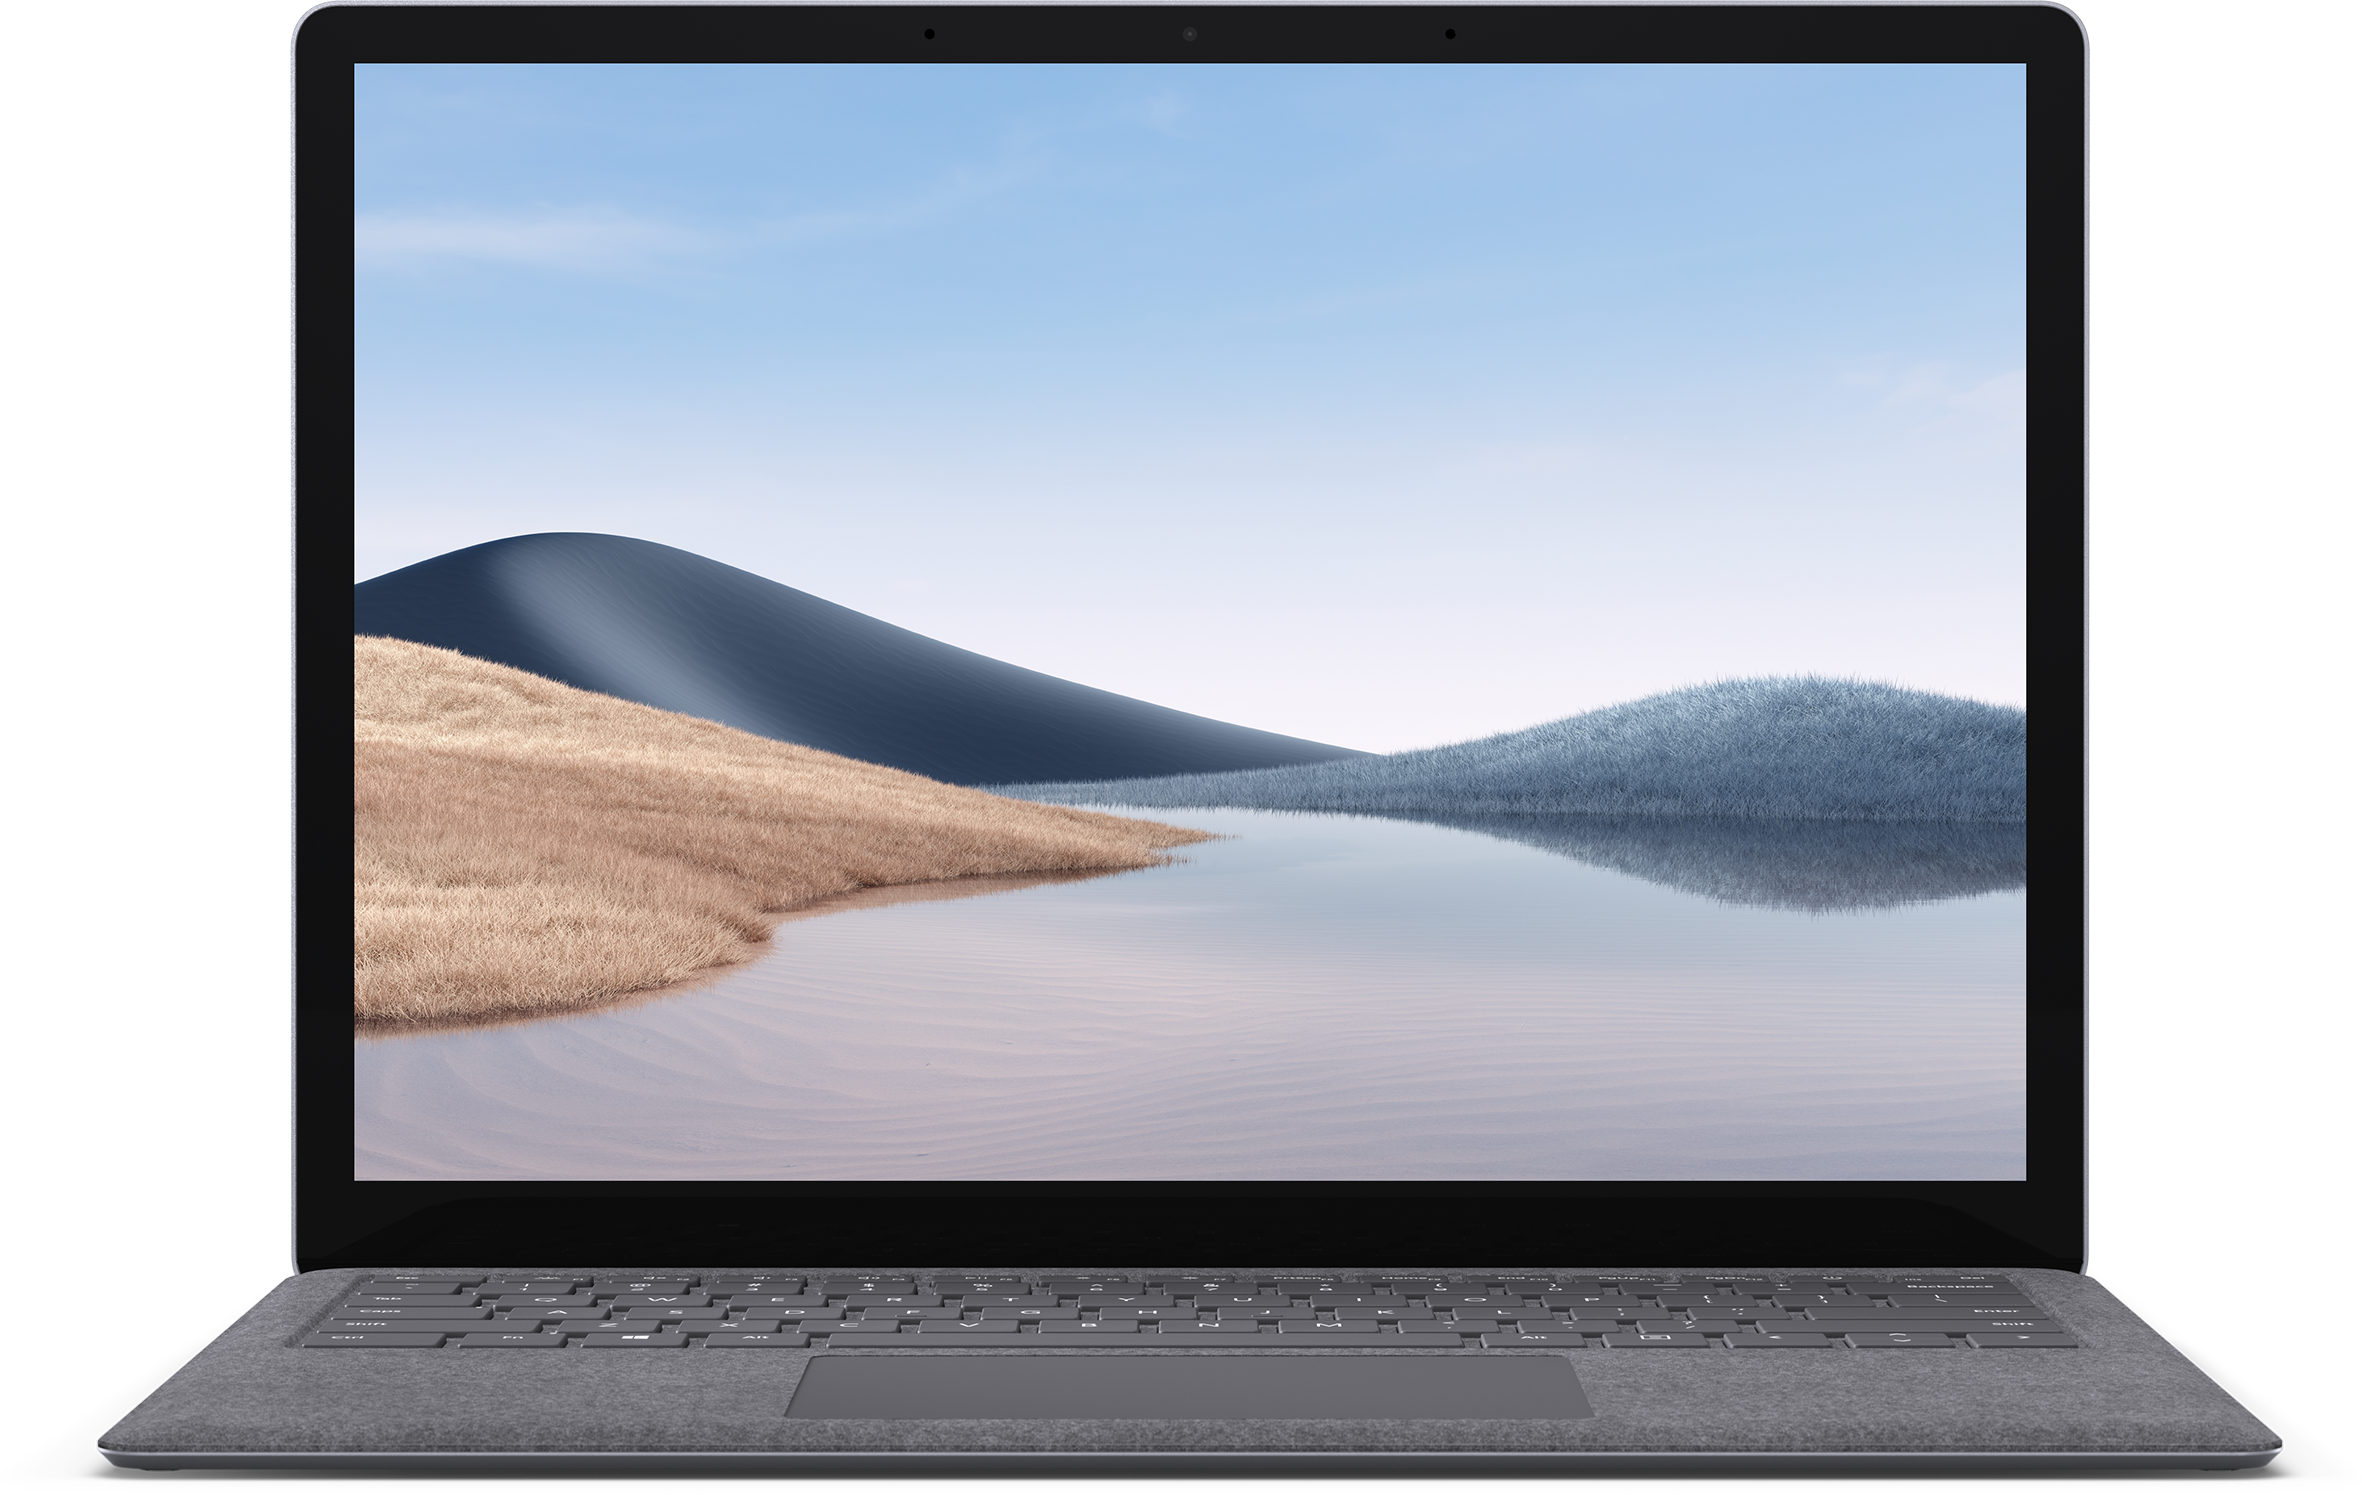 100％の保証 送料無料 Microsoft Surface Laptop 13.5 15インチ ノートパソコンケース 布 実用  電源収納ポーチ付き 超スリム バッグ型 軽量 大容量収納 サーフェス ラップトップ 第1 4世代 カバン型 パソコンケース 